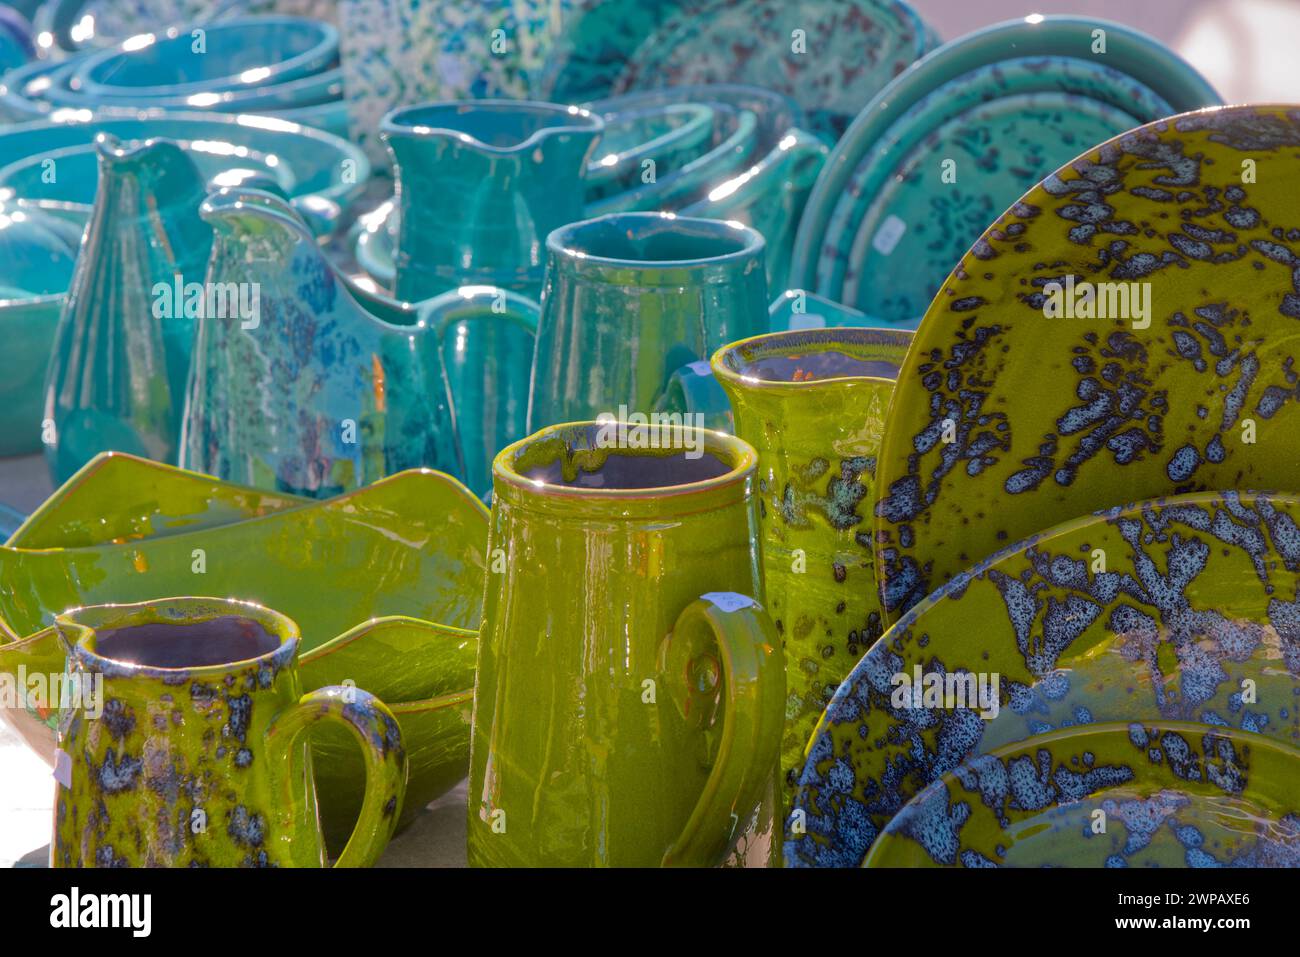 Ceramica colorata in un mercato in Provenza ... - poteries colorées sur un marché de provence ...) Foto Stock